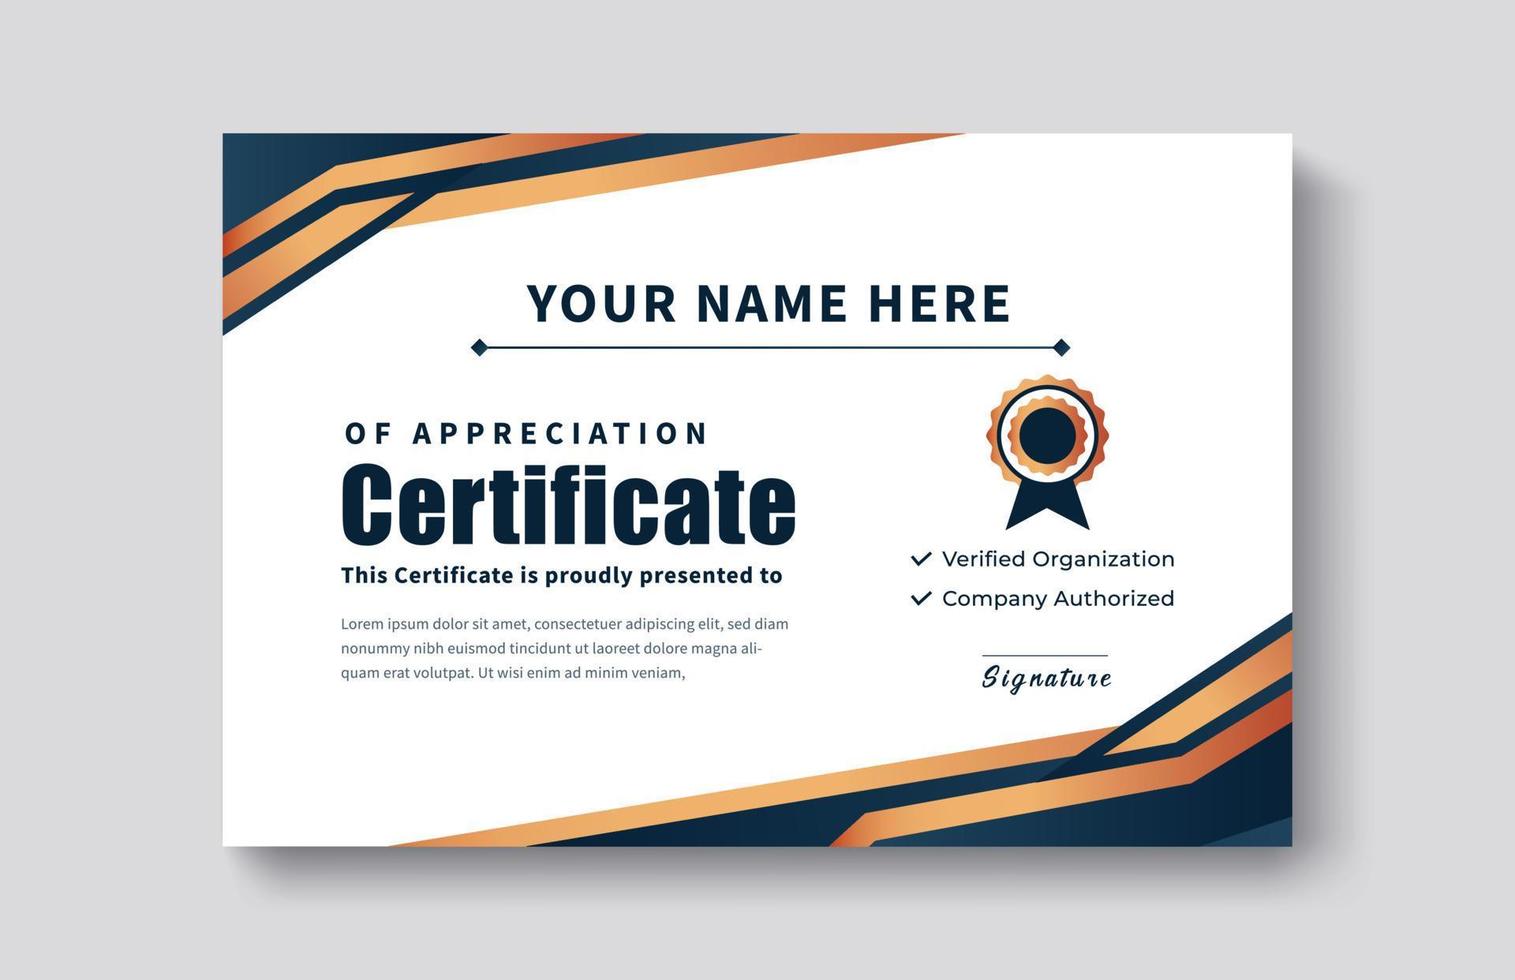 certificato oro apprezzamento modello realizzazione premio realizzazione pulito creativo certificato riconoscimento eccellenza modello di completamento bordo certificato modello di progettazione certificato vettore